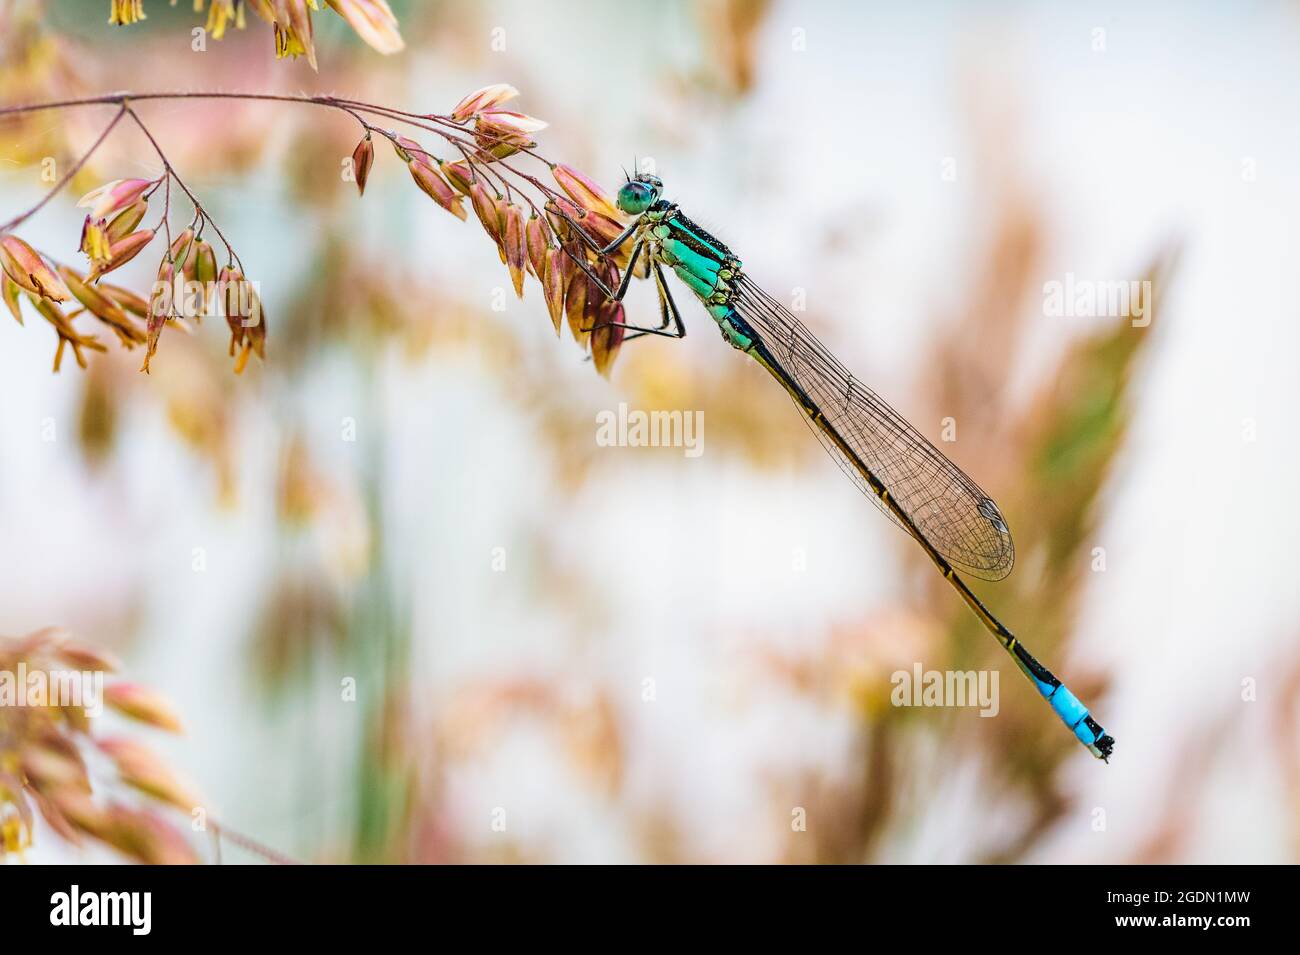 La mouche à queue bleue ou le bluetail commun (Ischnula elegans) qui se tient sur les lames de l'herbe. Prise de vue macro, agrandissement élevé, nombreux détails de ce dr Banque D'Images